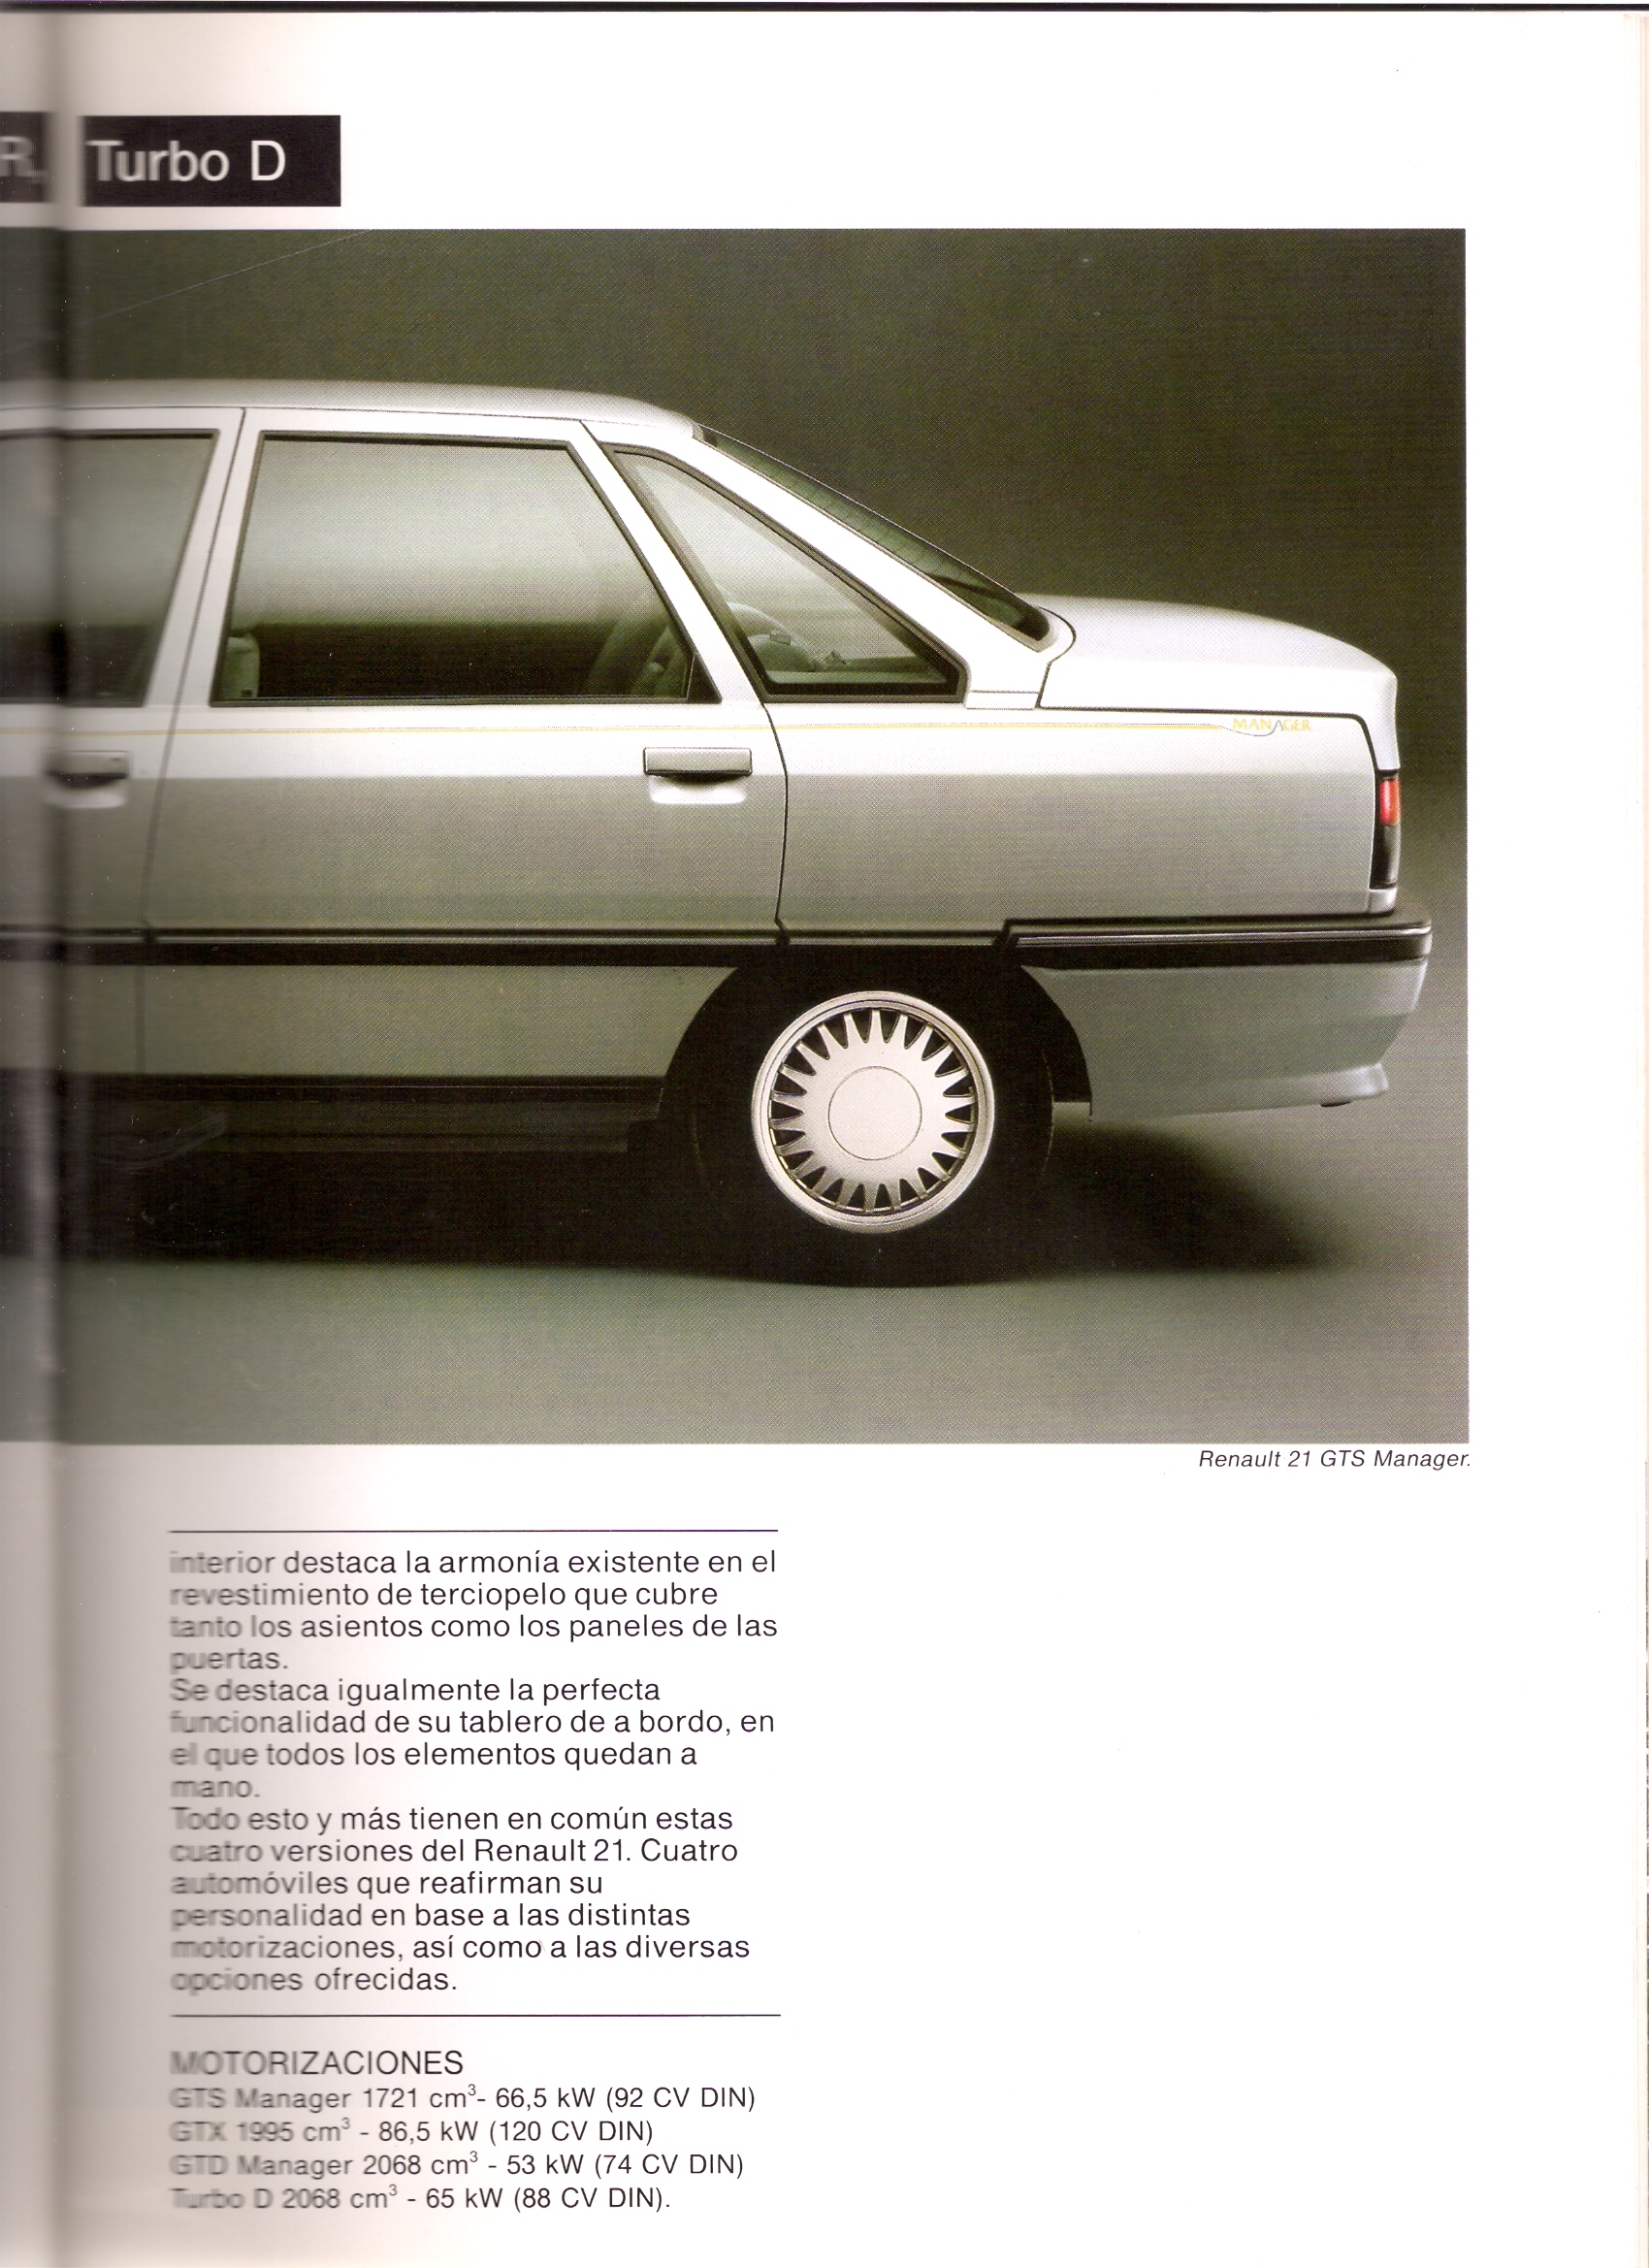 Catálogos del Renault 21